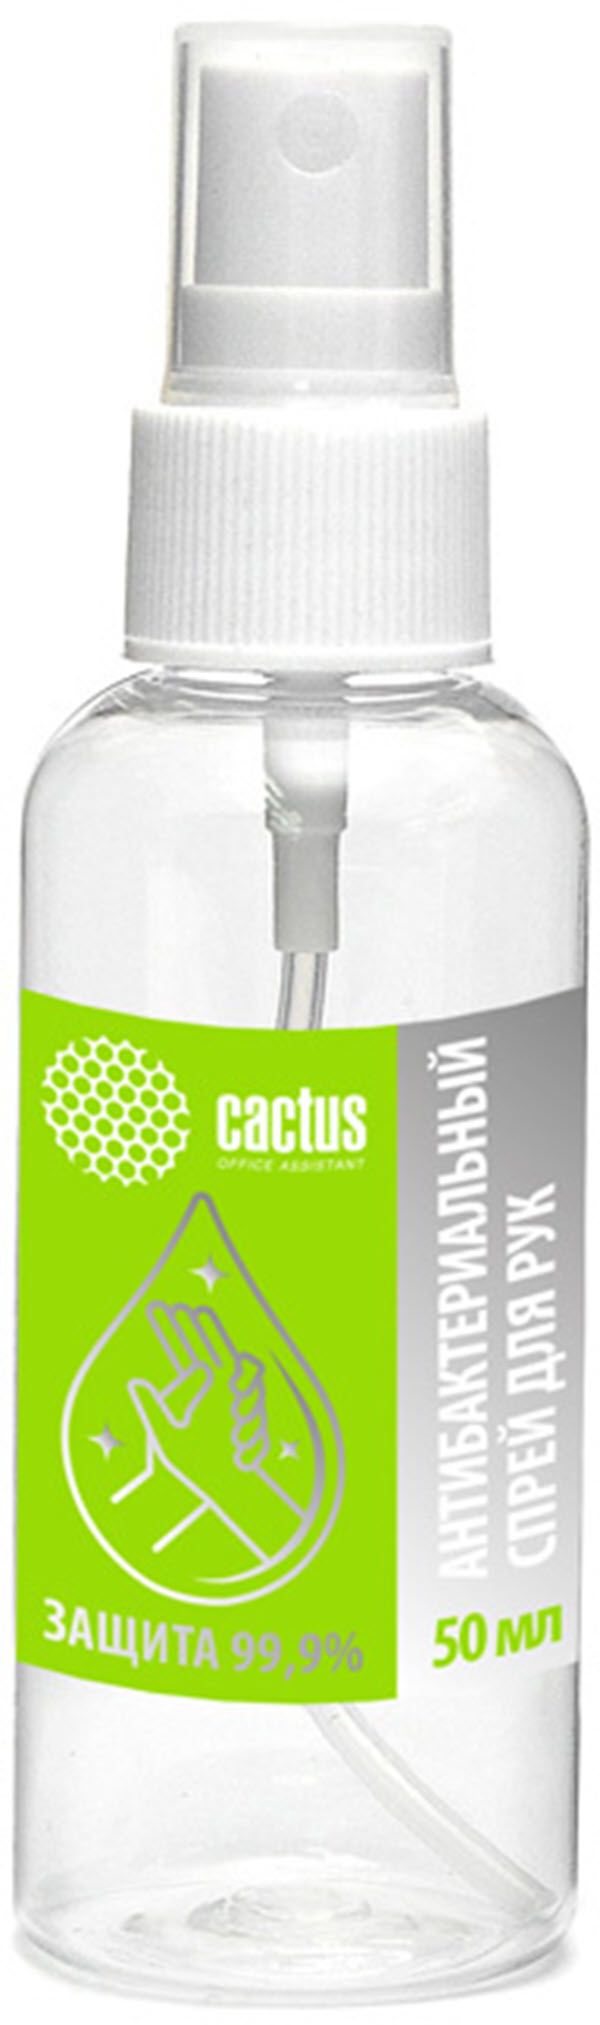 Антисептик для рук Cactus CS-Antiseptic жидкость 50мл дополнительный флакон жидкость от мух и комаров на 585 часов chameleon 45 мл